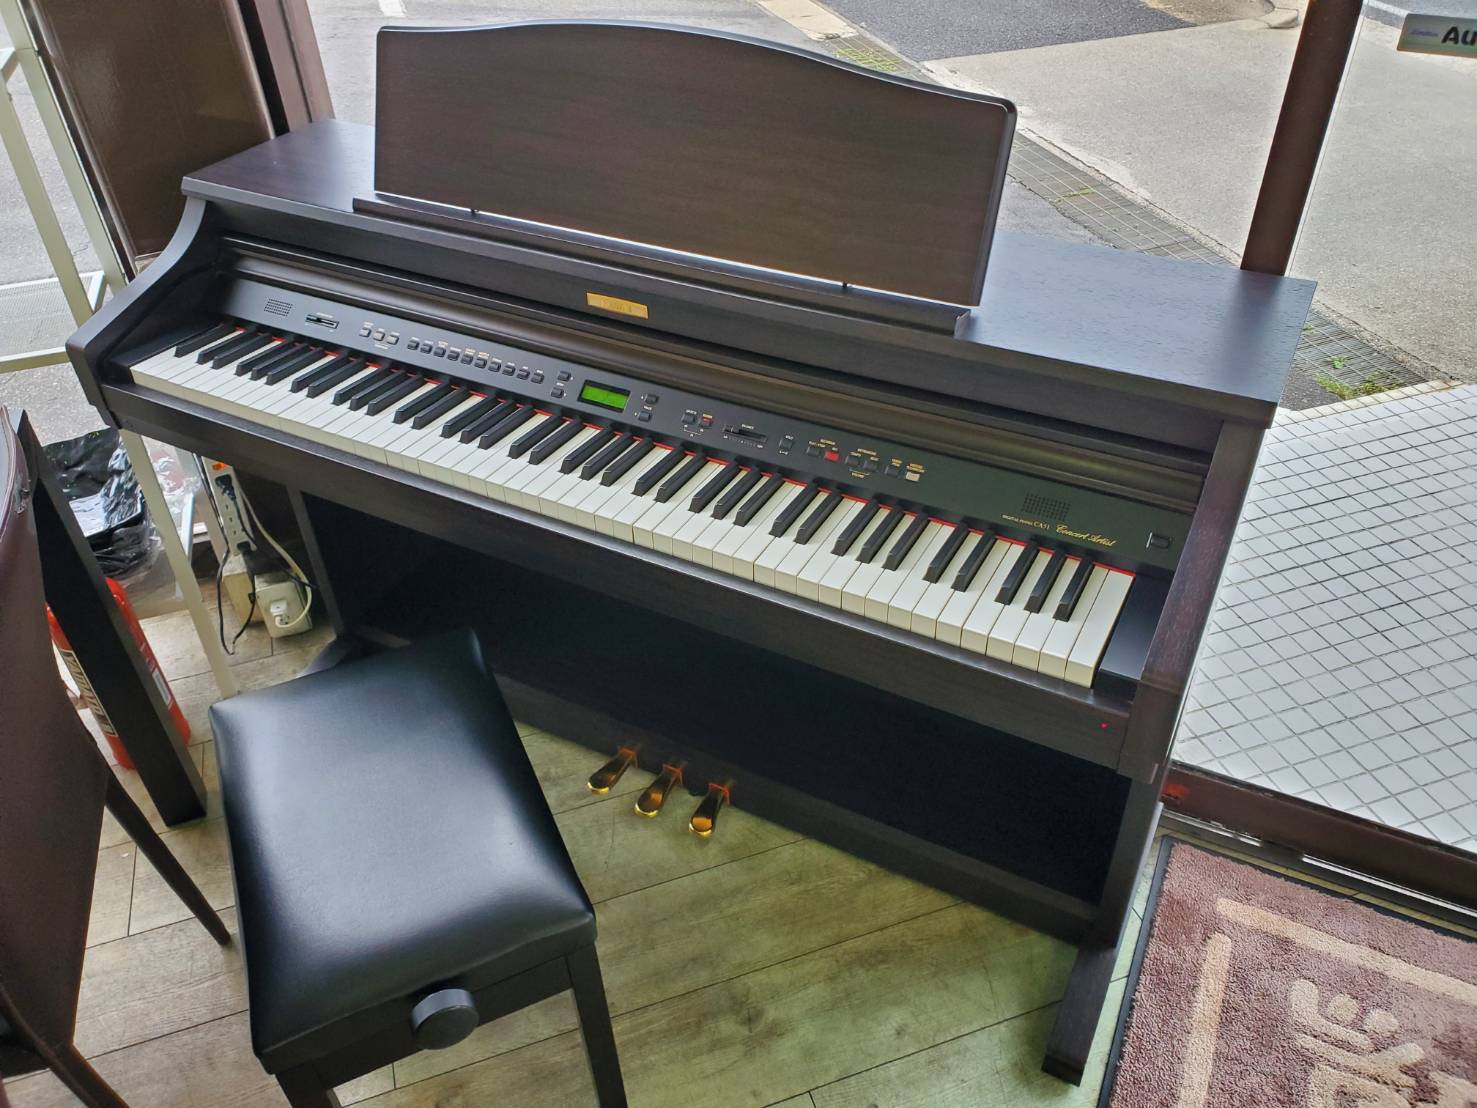 激安価格セール KAWAIの木製鍵盤 グランドピアノタッチ デジタルピアノ 棚/ラック